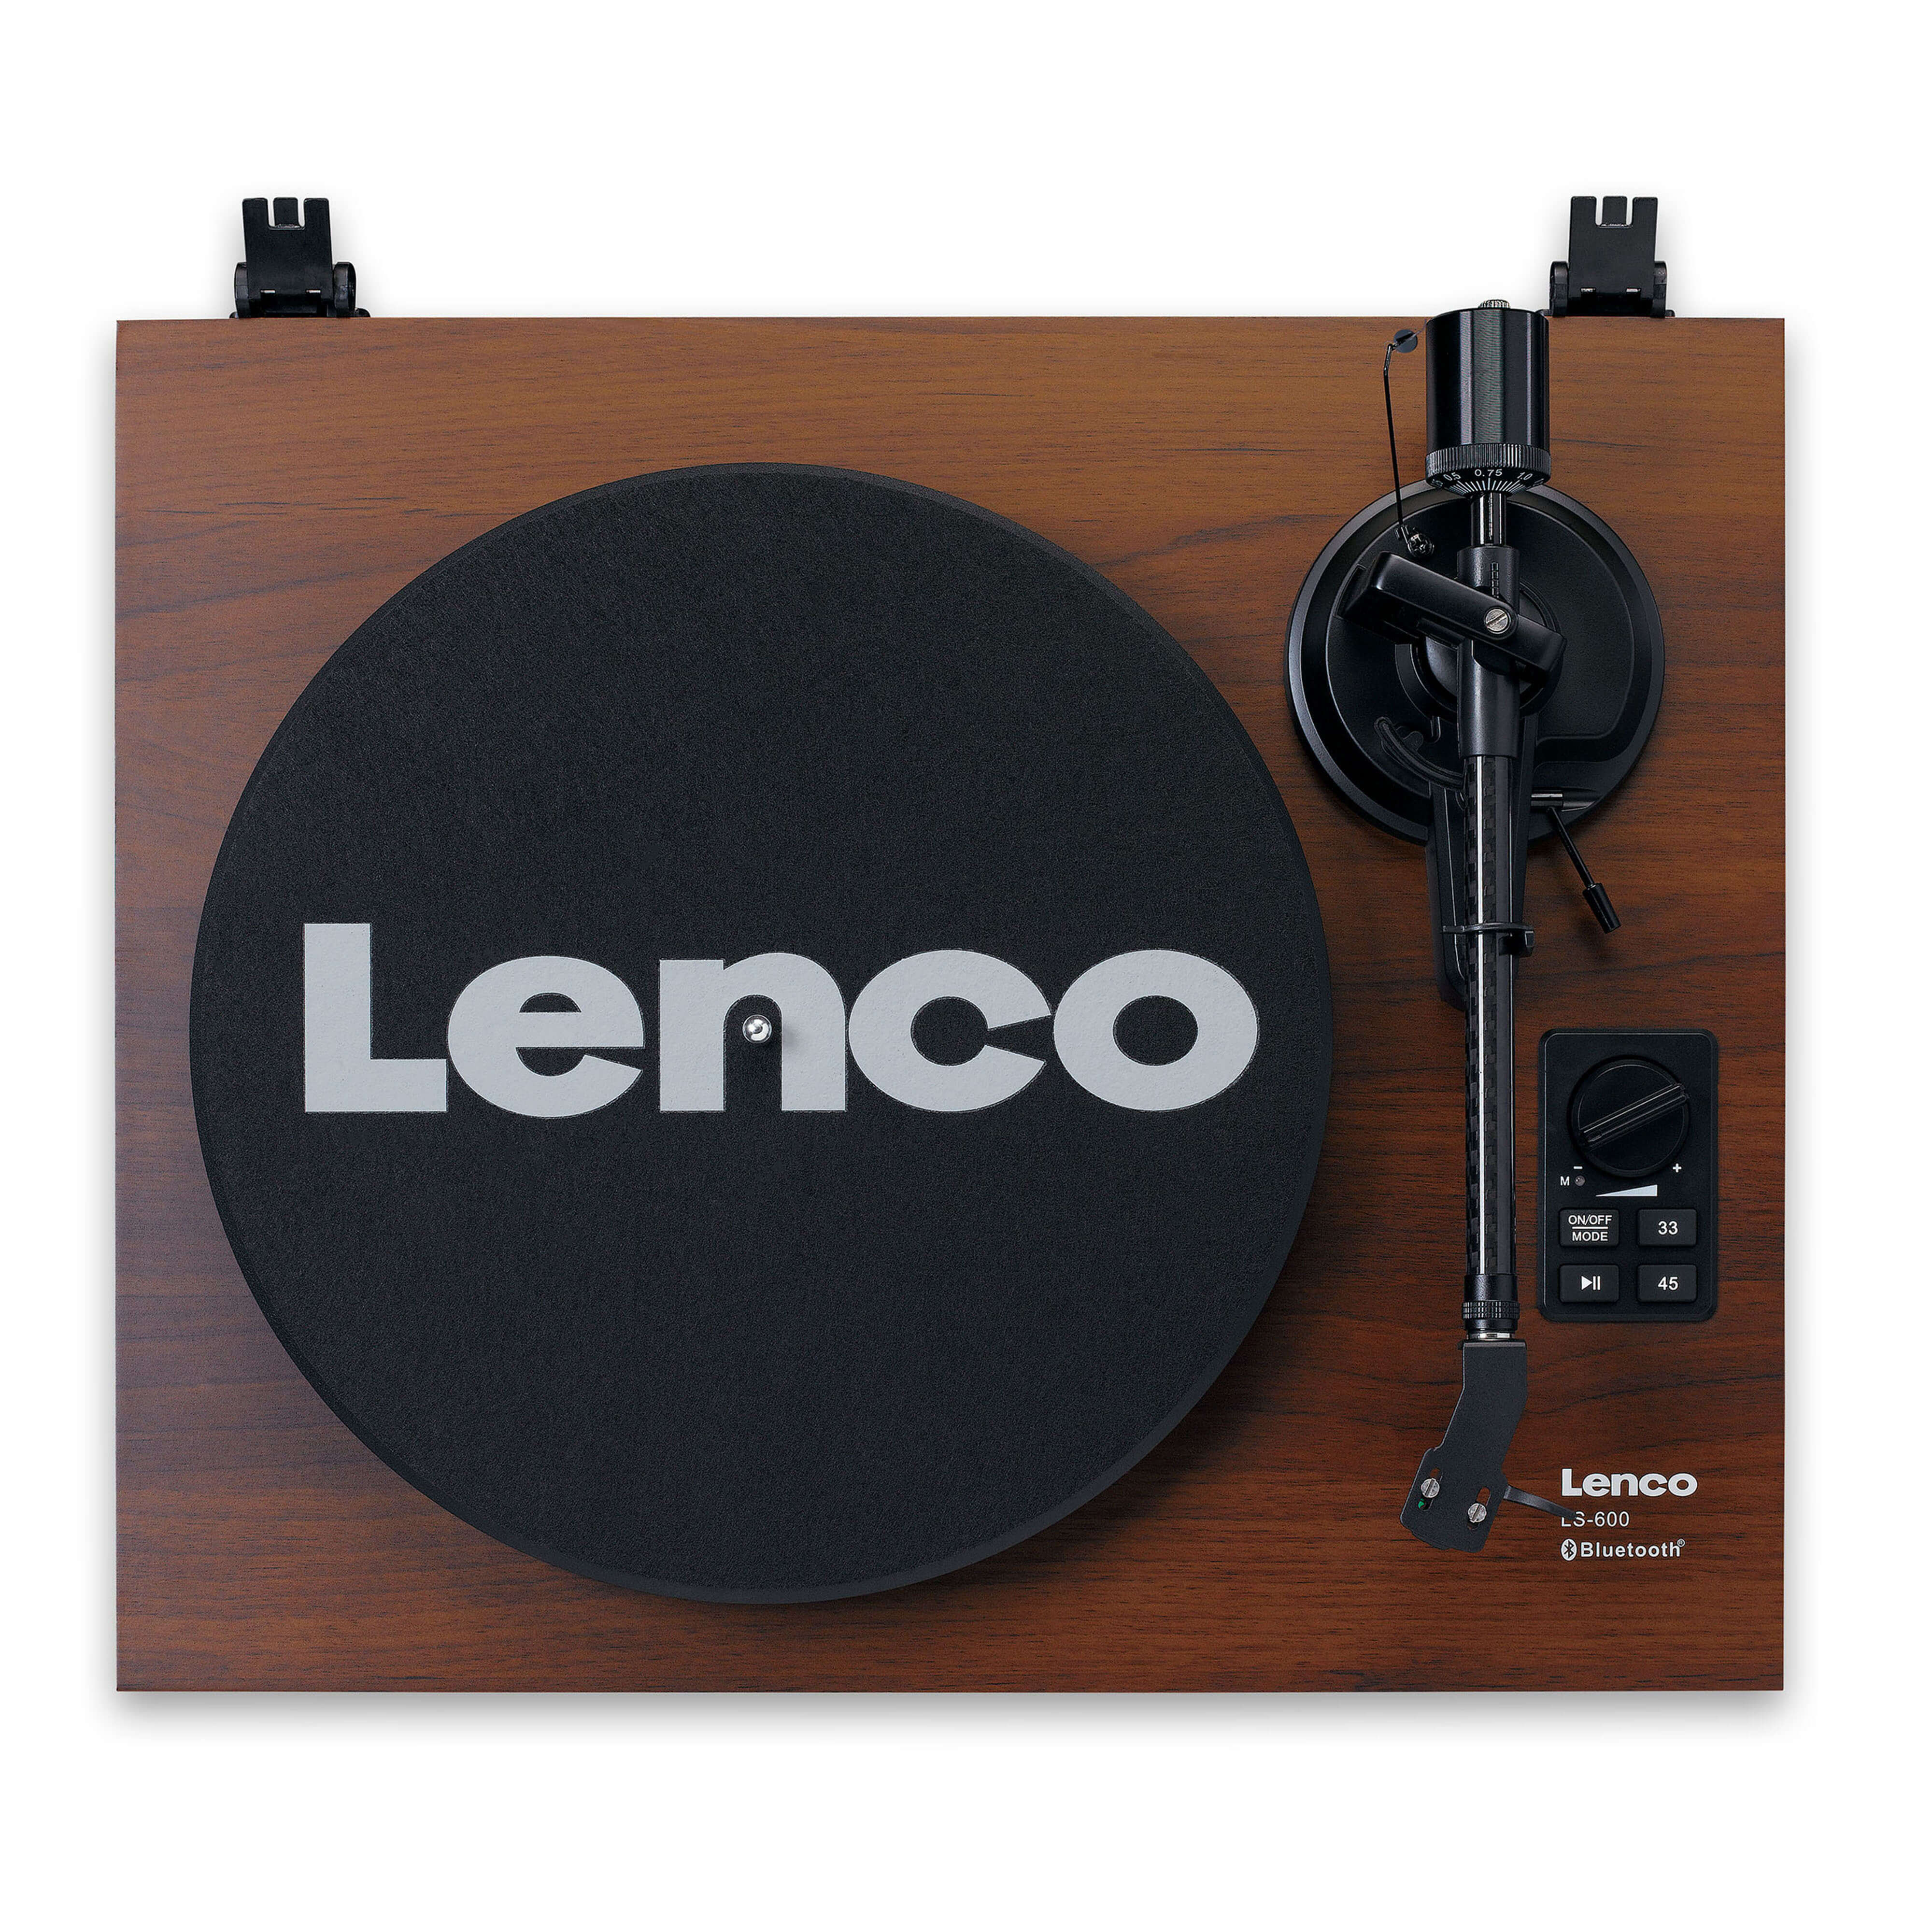 LENCO Lenco LS-600 Walnut Виниловый проигрыватель с двумя внешними динамиками и функцией Bluetooth